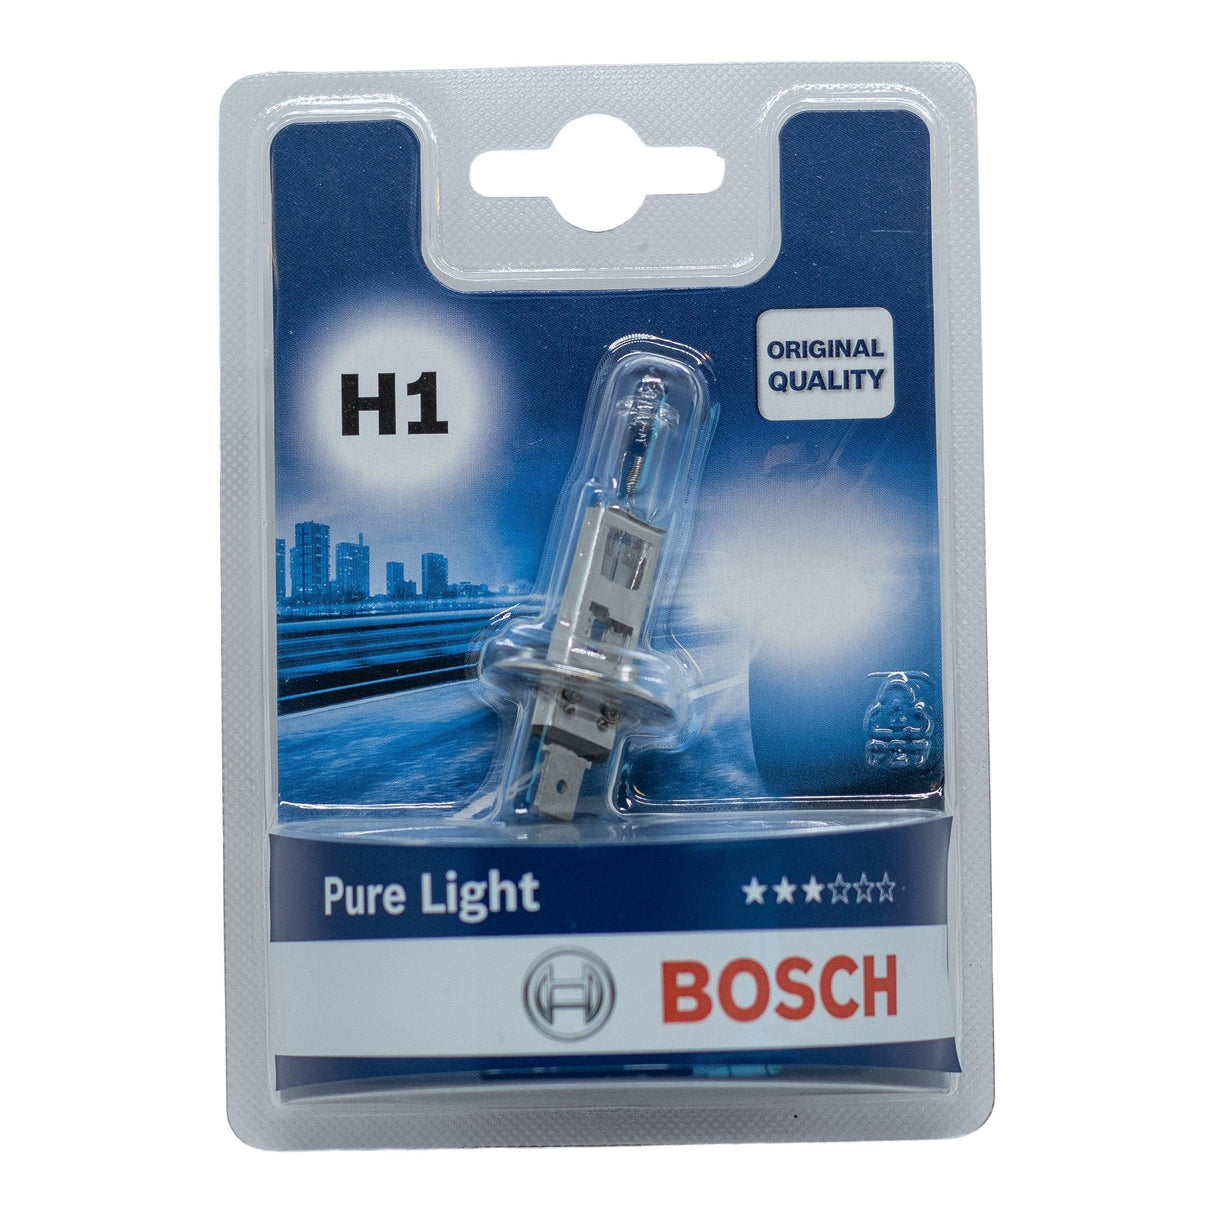 Bosch Pure Light H1 - Xpert Cleaning